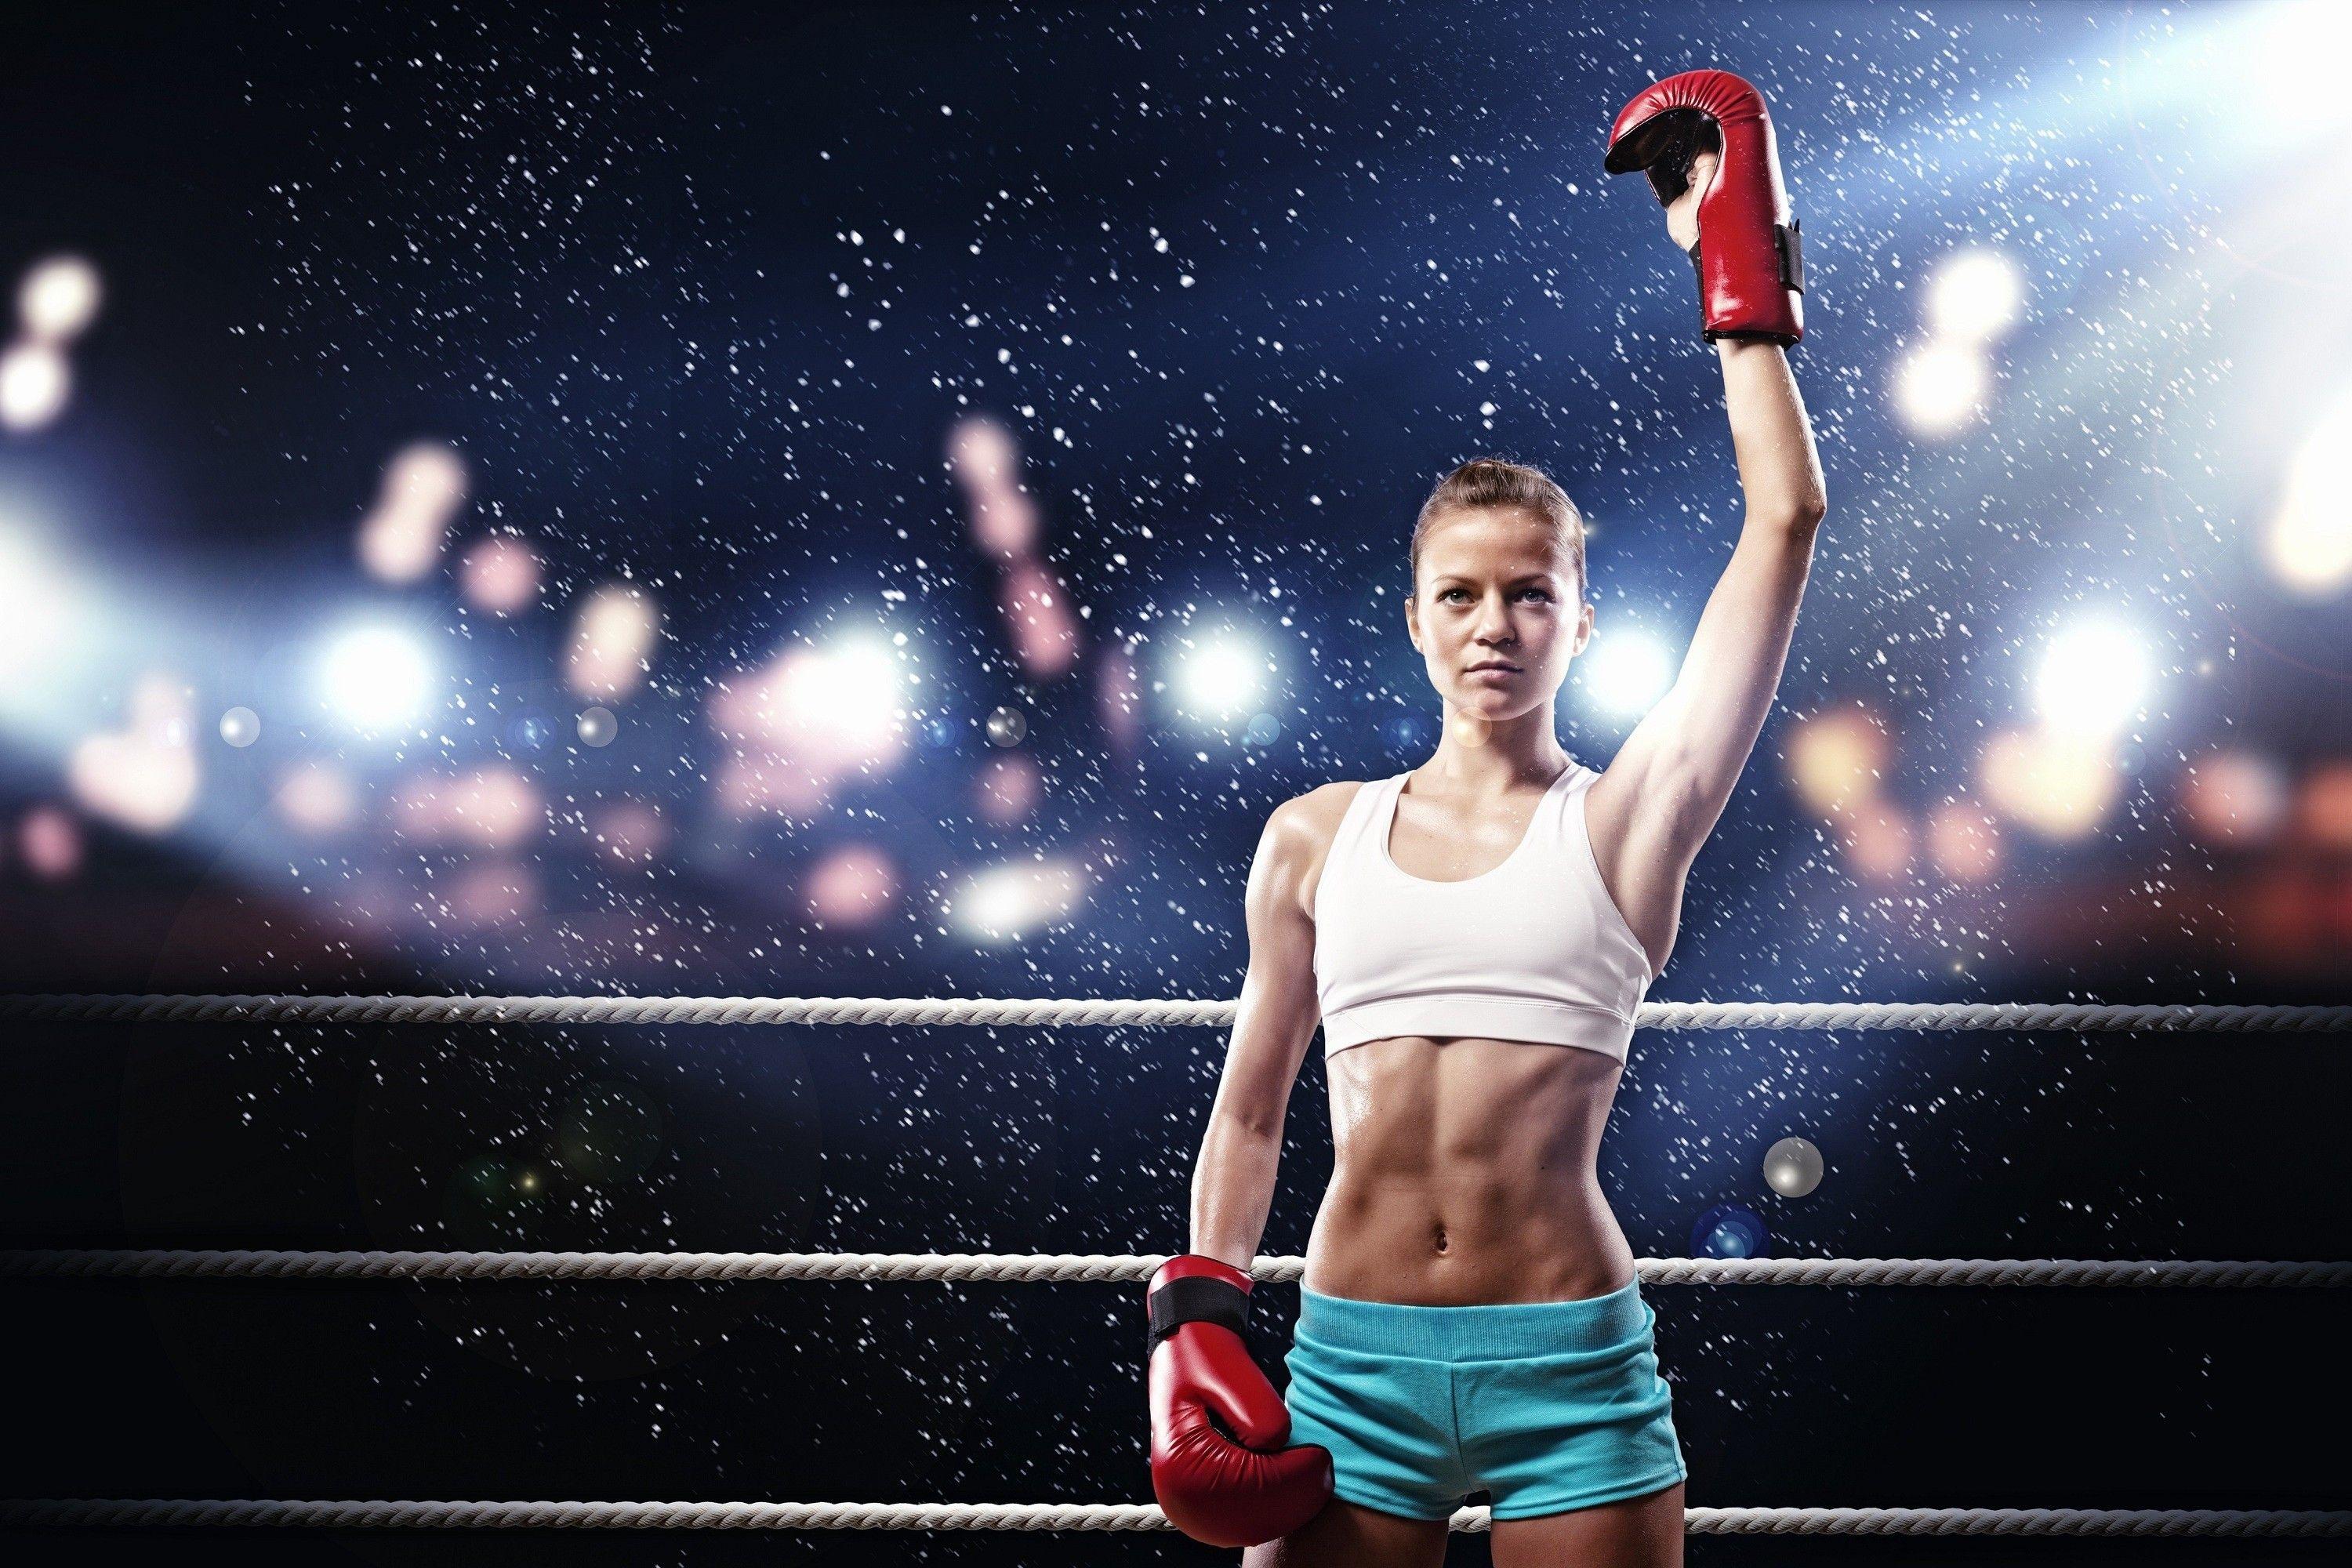 women, Sports, Boxing, Armpits Wallpaper HD / Desktop and Mobile